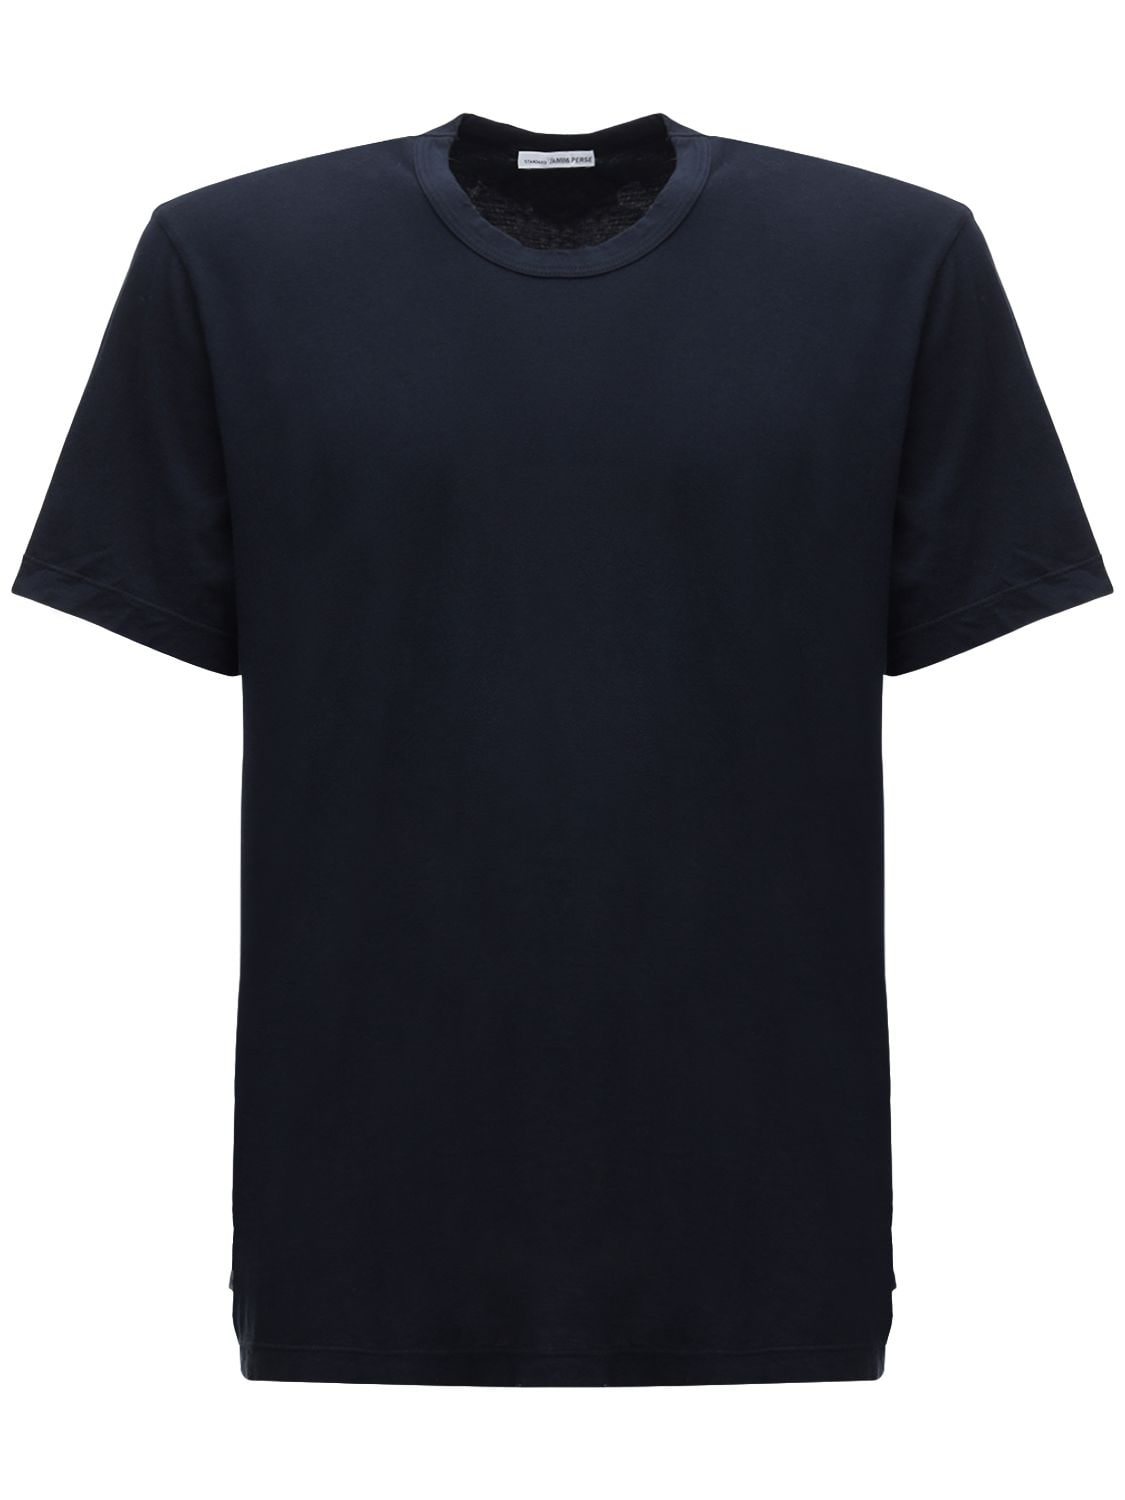 James Perse Lightweight Cotton Jersey T-shirt In Deep